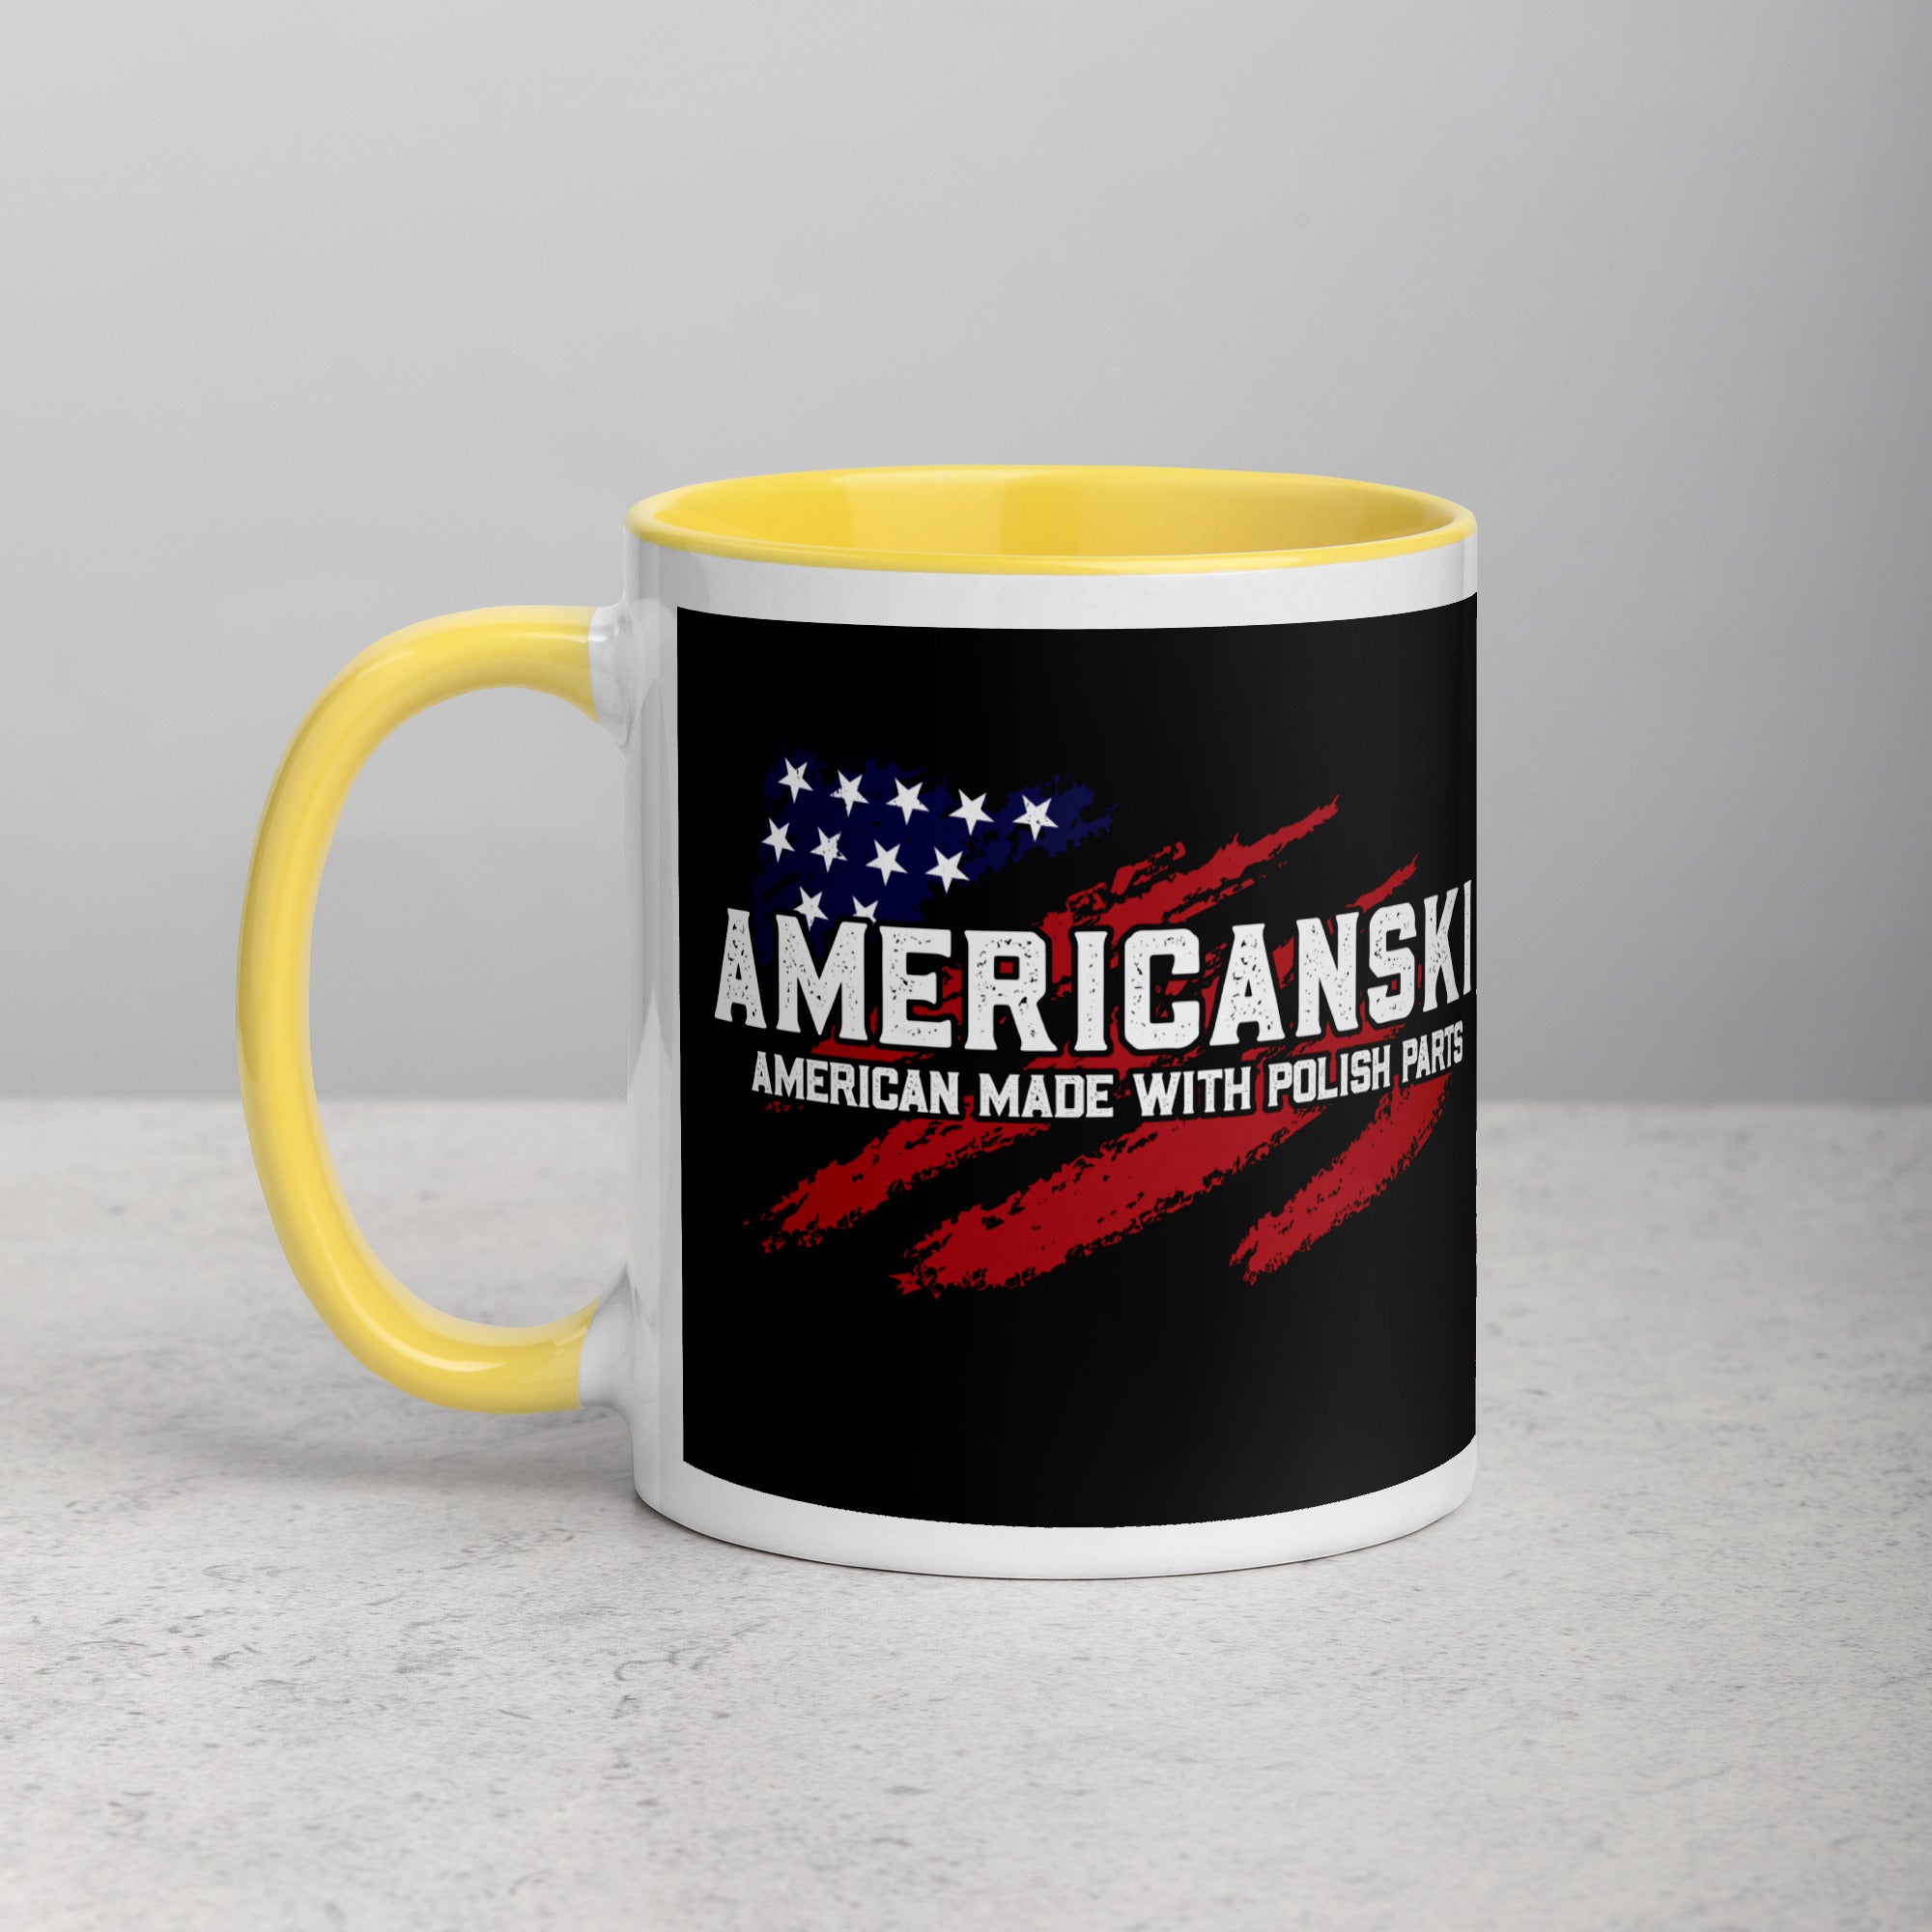 Americanski Coffee Mug with Color Inside  Polish Shirt Store Yellow 11 oz 